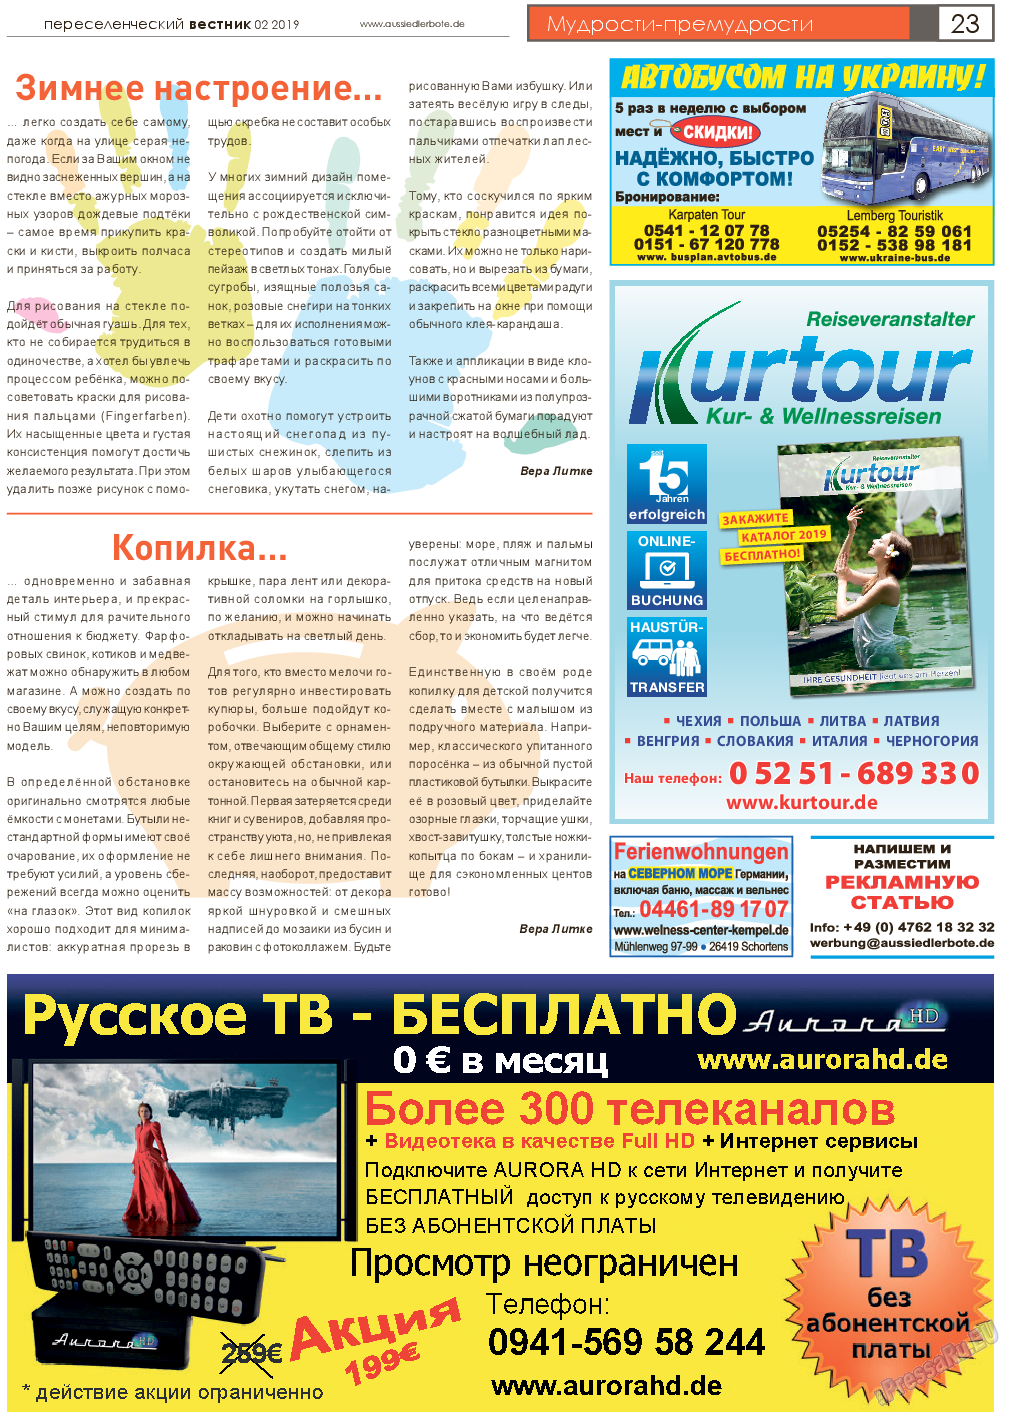 Переселенческий вестник (газета). 2019 год, номер 2, стр. 23